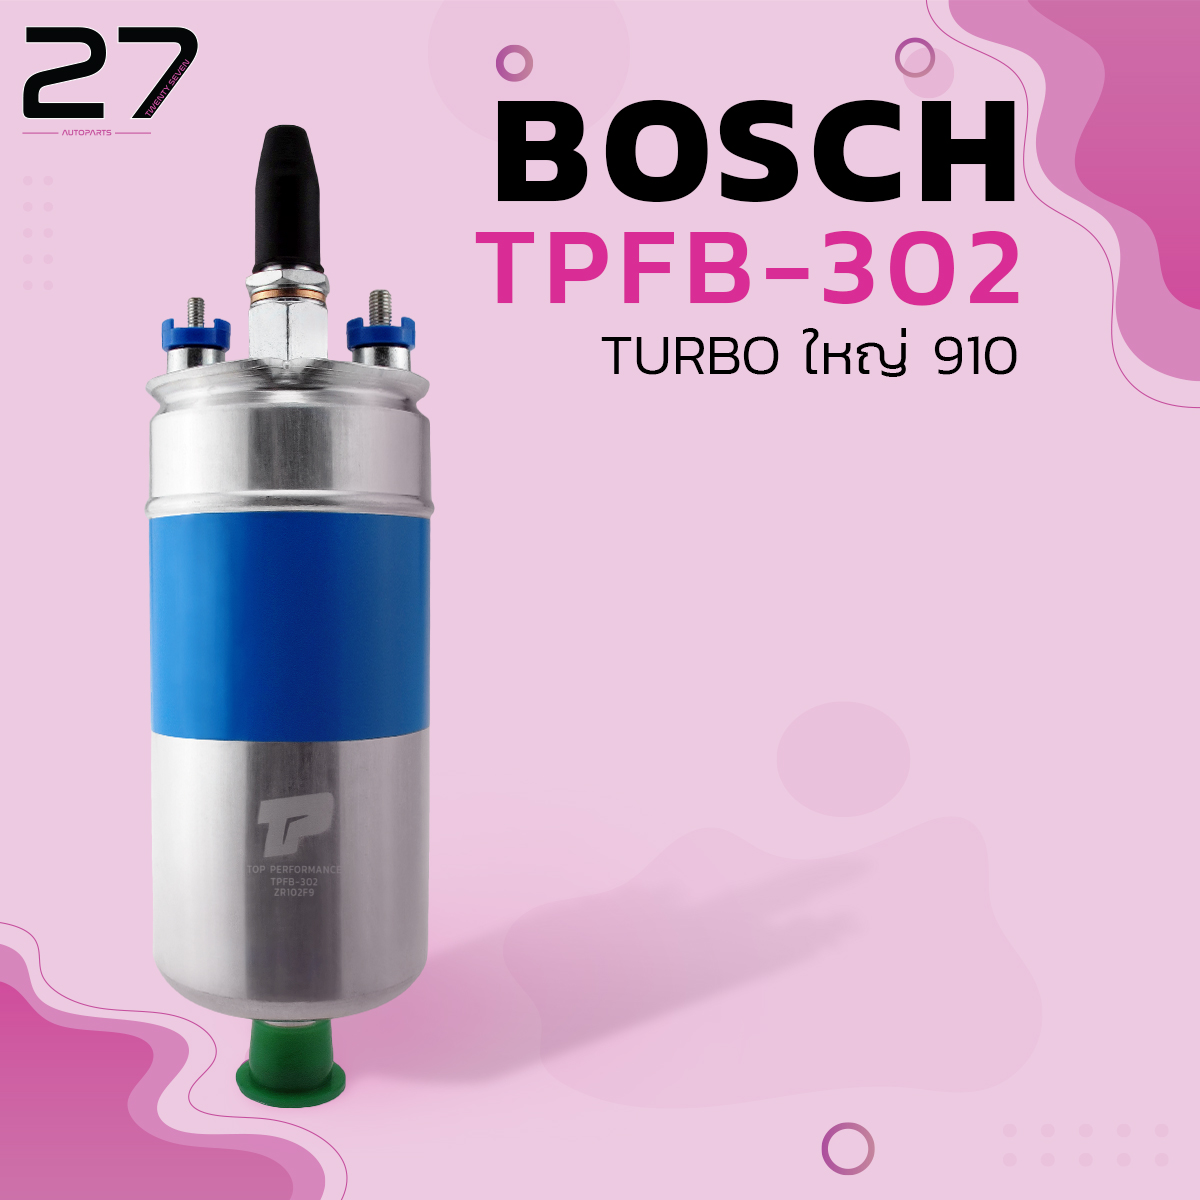 ปั้มติ๊ก BOSCH รหัส TPFB-302 รุ่น BENZ / TURBO ใหญ่ 910 12V  TOP PERFORMANCE มอเตอร์ปั๊มติ๊ก ของแท้100% MADE IN JAPAN